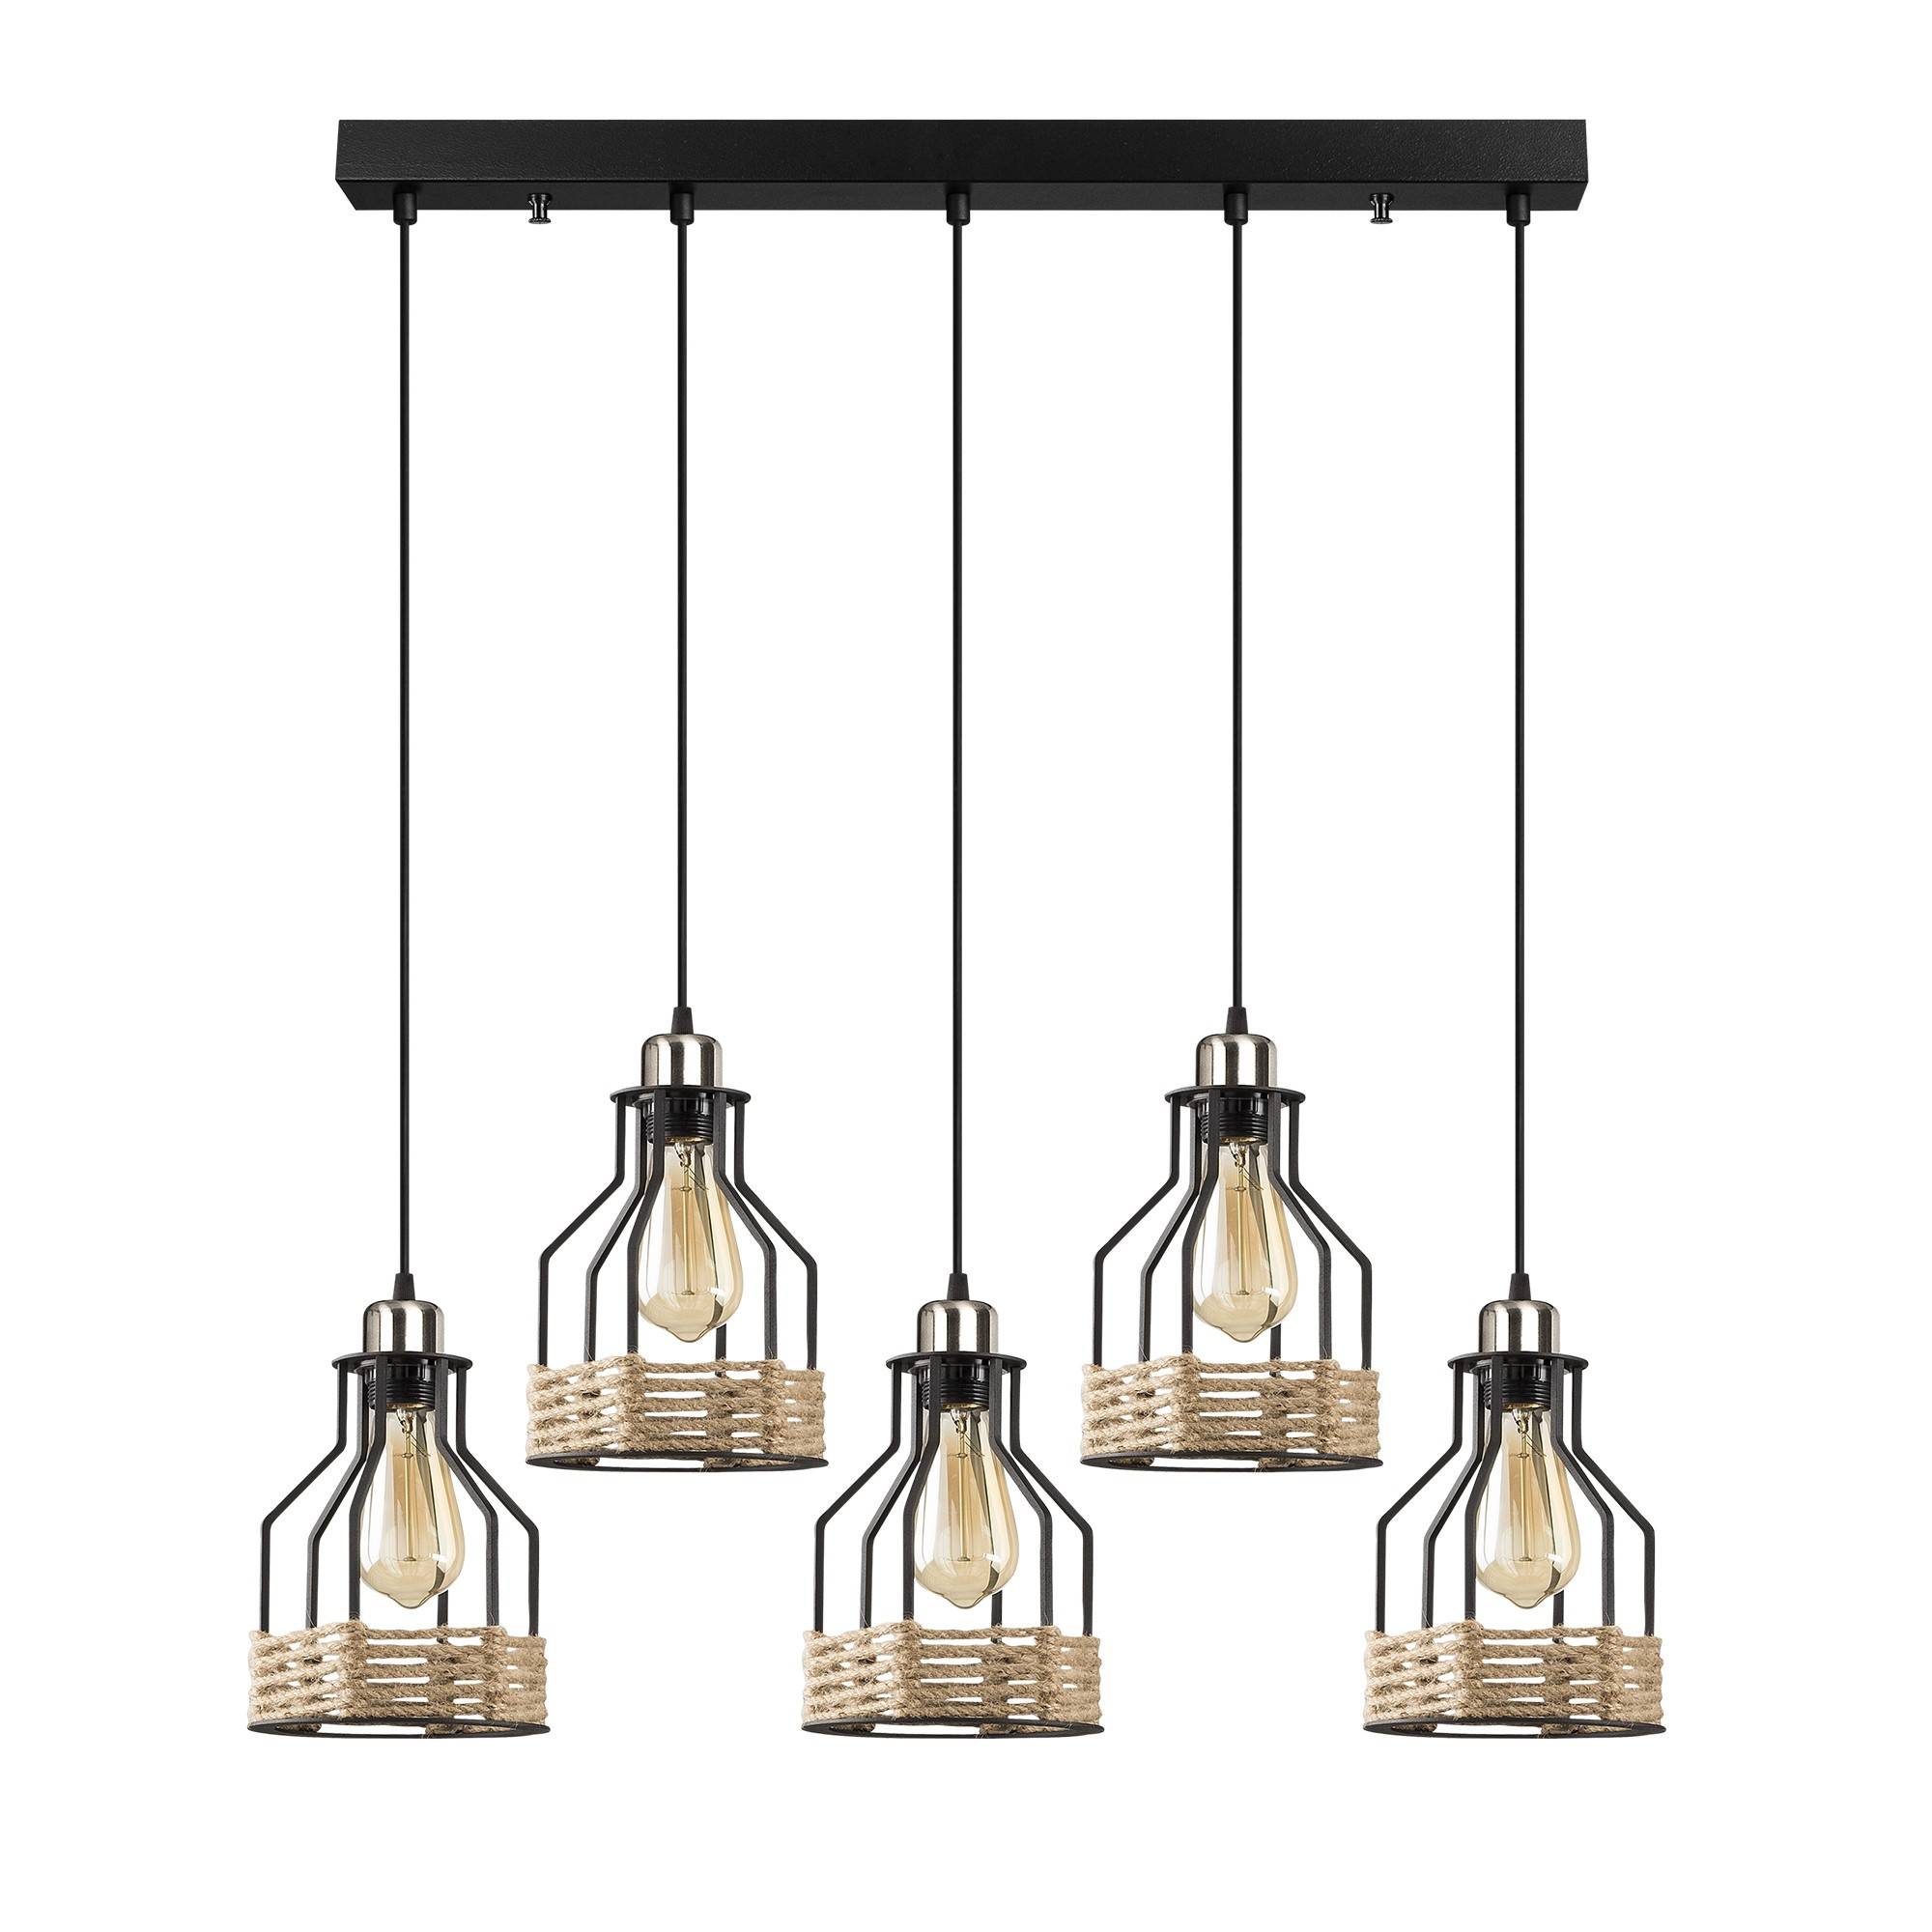 Suspension style industriel 5 lampes alignées hauteur différente Camarose 87cm Métal Noir et chrome